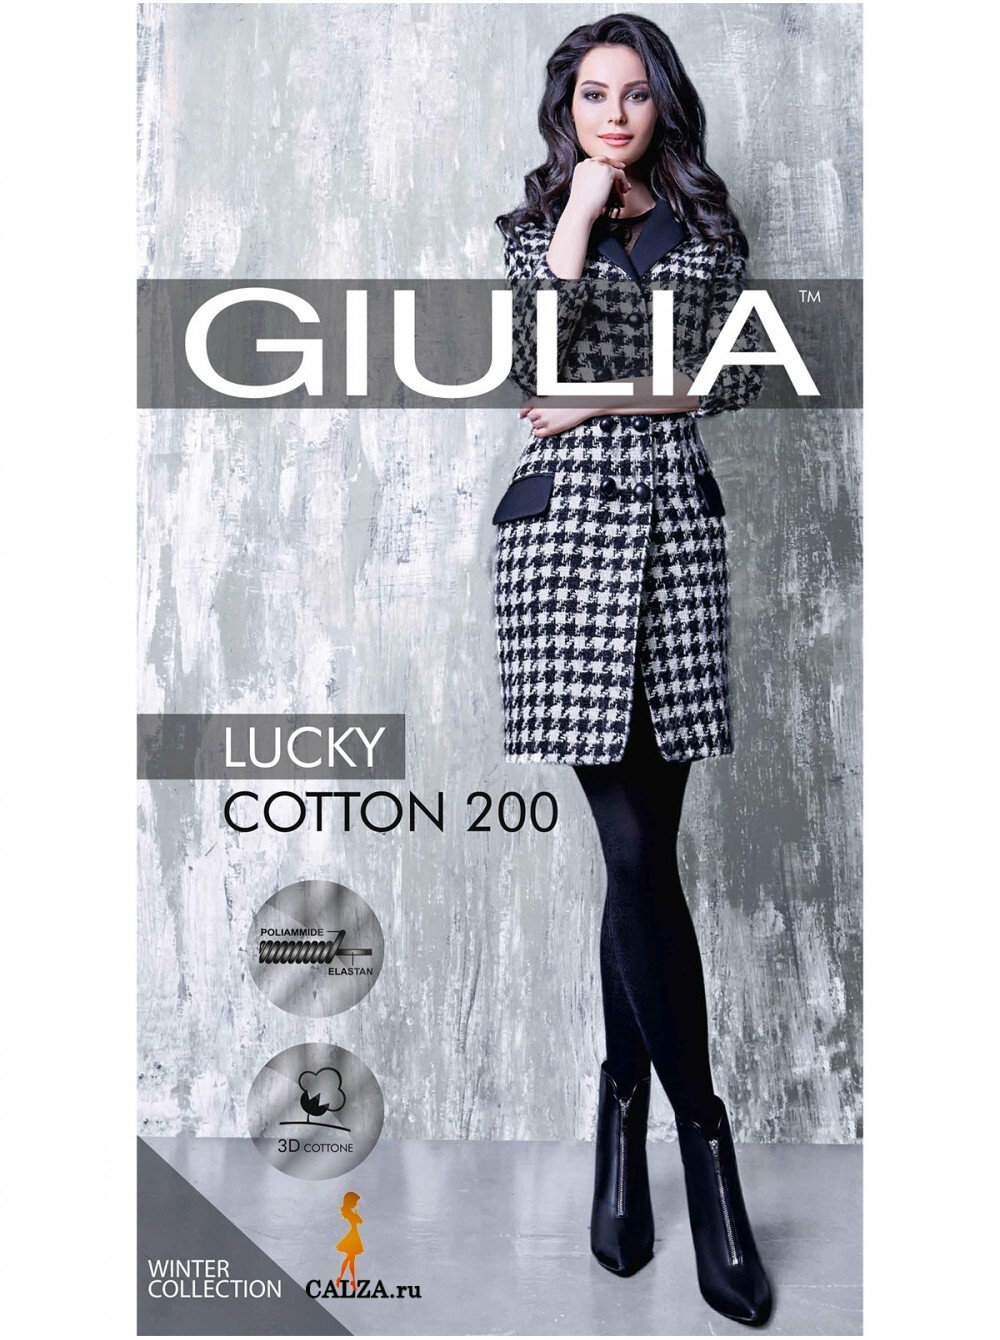 Giulia  LUCKY COTTON 200